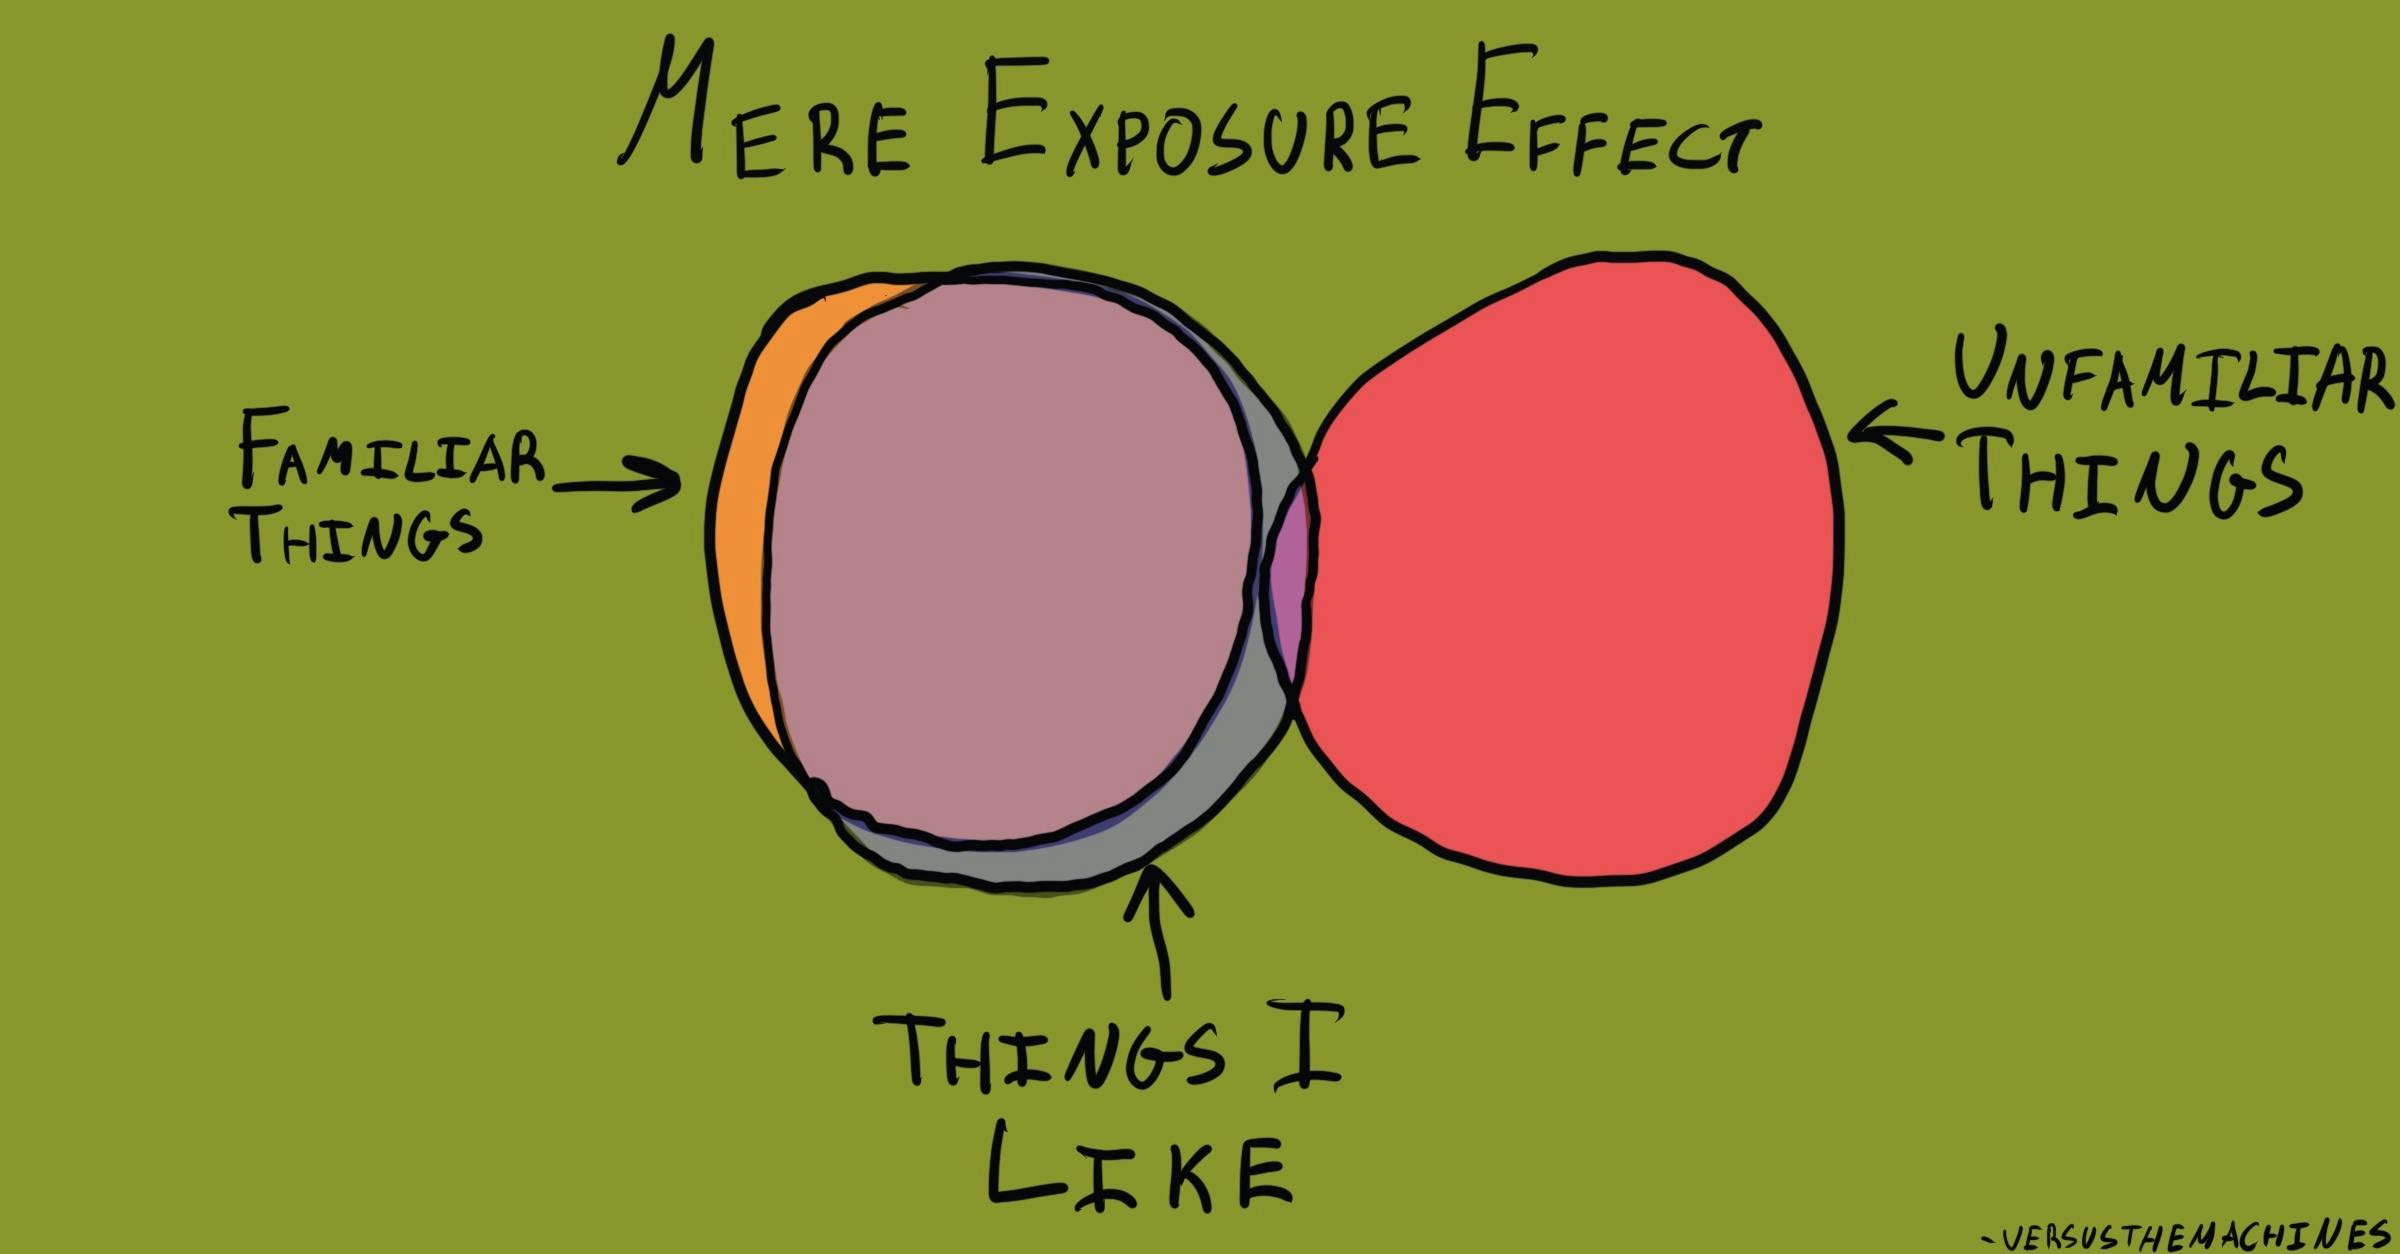 Mere Exposure Effect Diagram